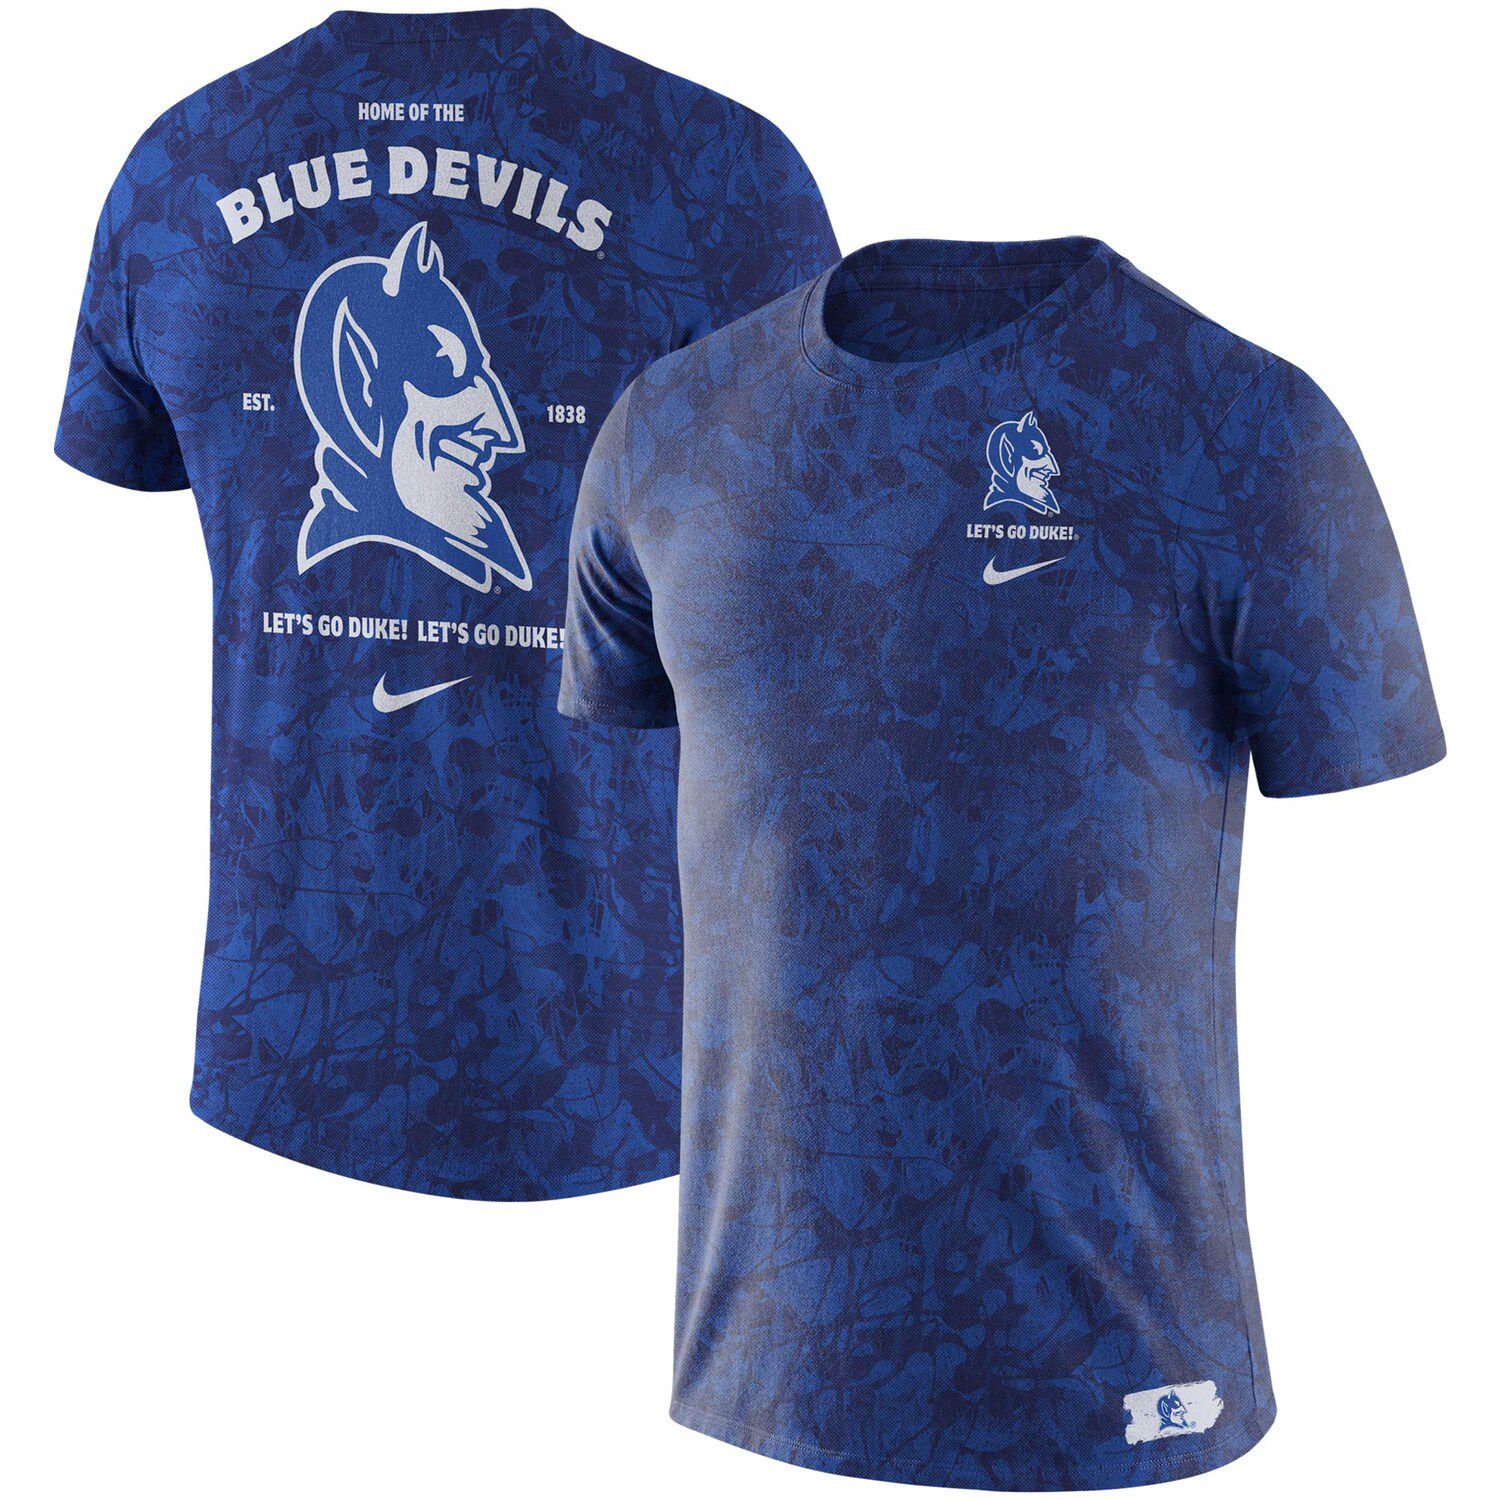 blue devils jersey